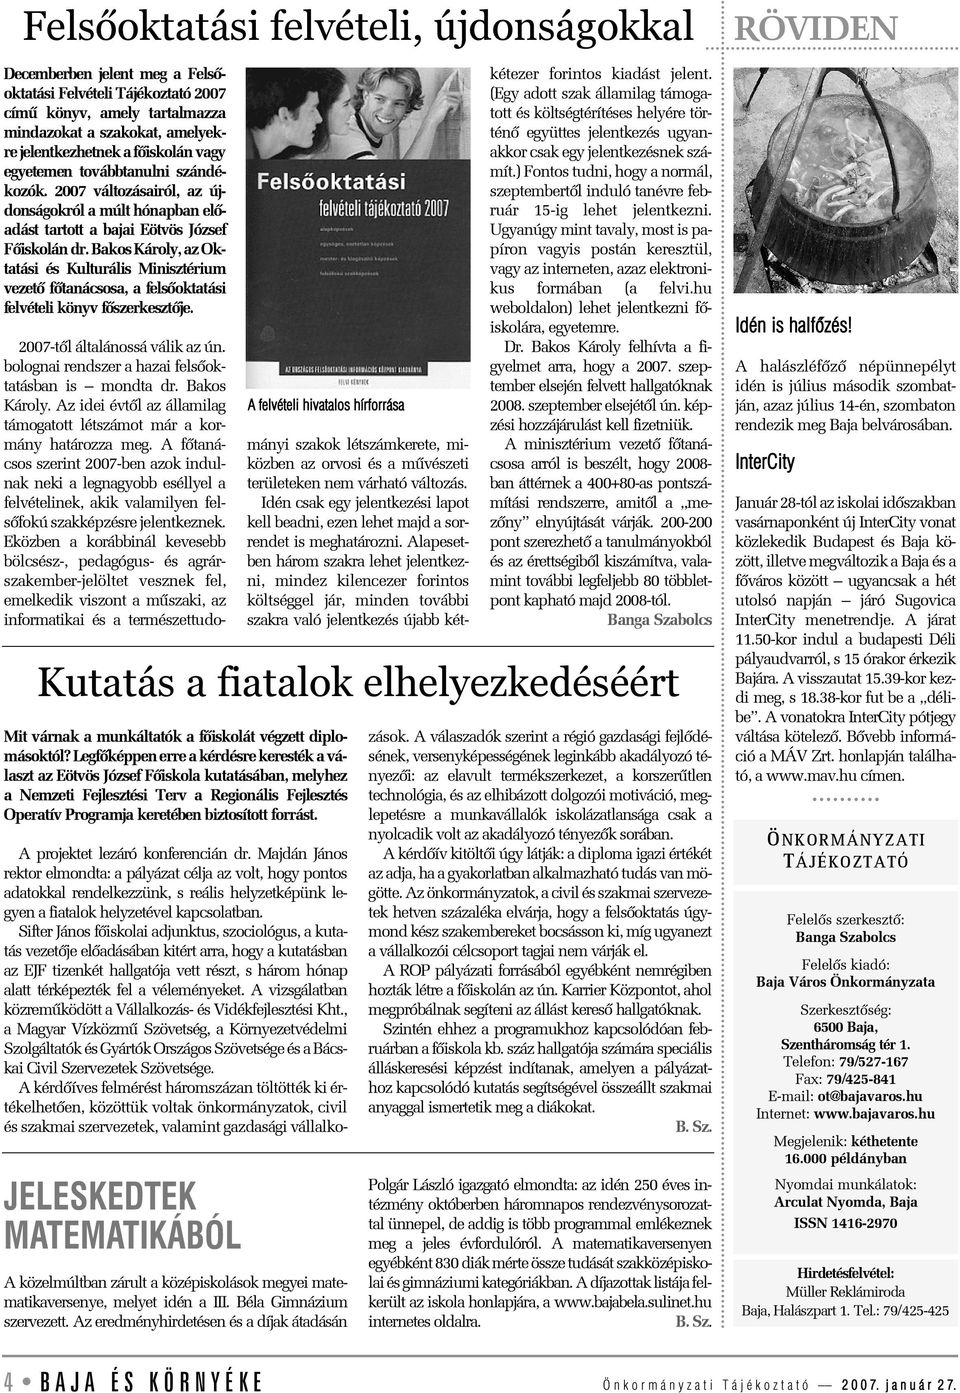 Bakos Károly, az Oktatási és Kulturális Minisztérium vezetõ fõtanácsosa, a felsõoktatási felvételi könyv fõszerkesztõje. 2007-tõl általánossá válik az ún.